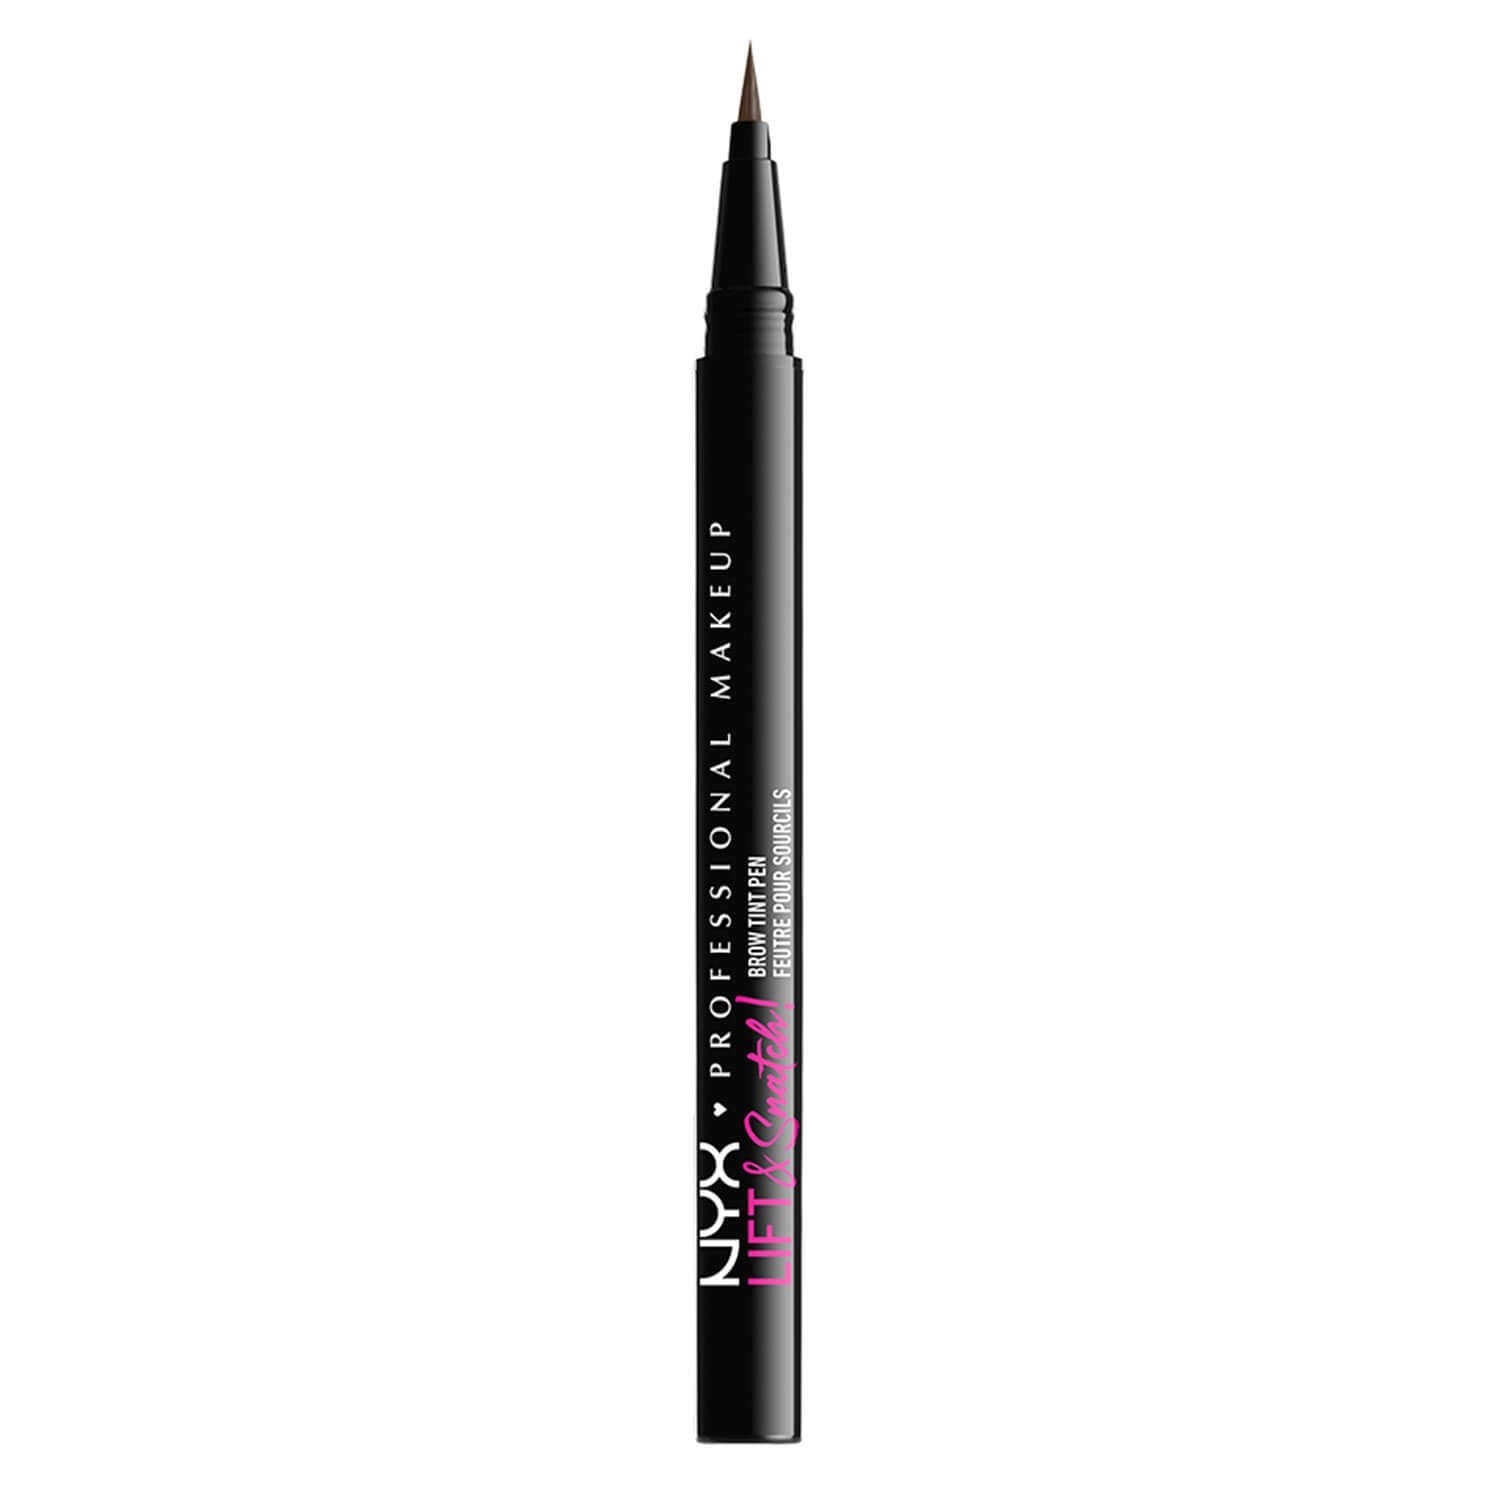 Produktbild von NYX Brows - Lift & Snatch! Brow Tint Pen Ash Brown 06